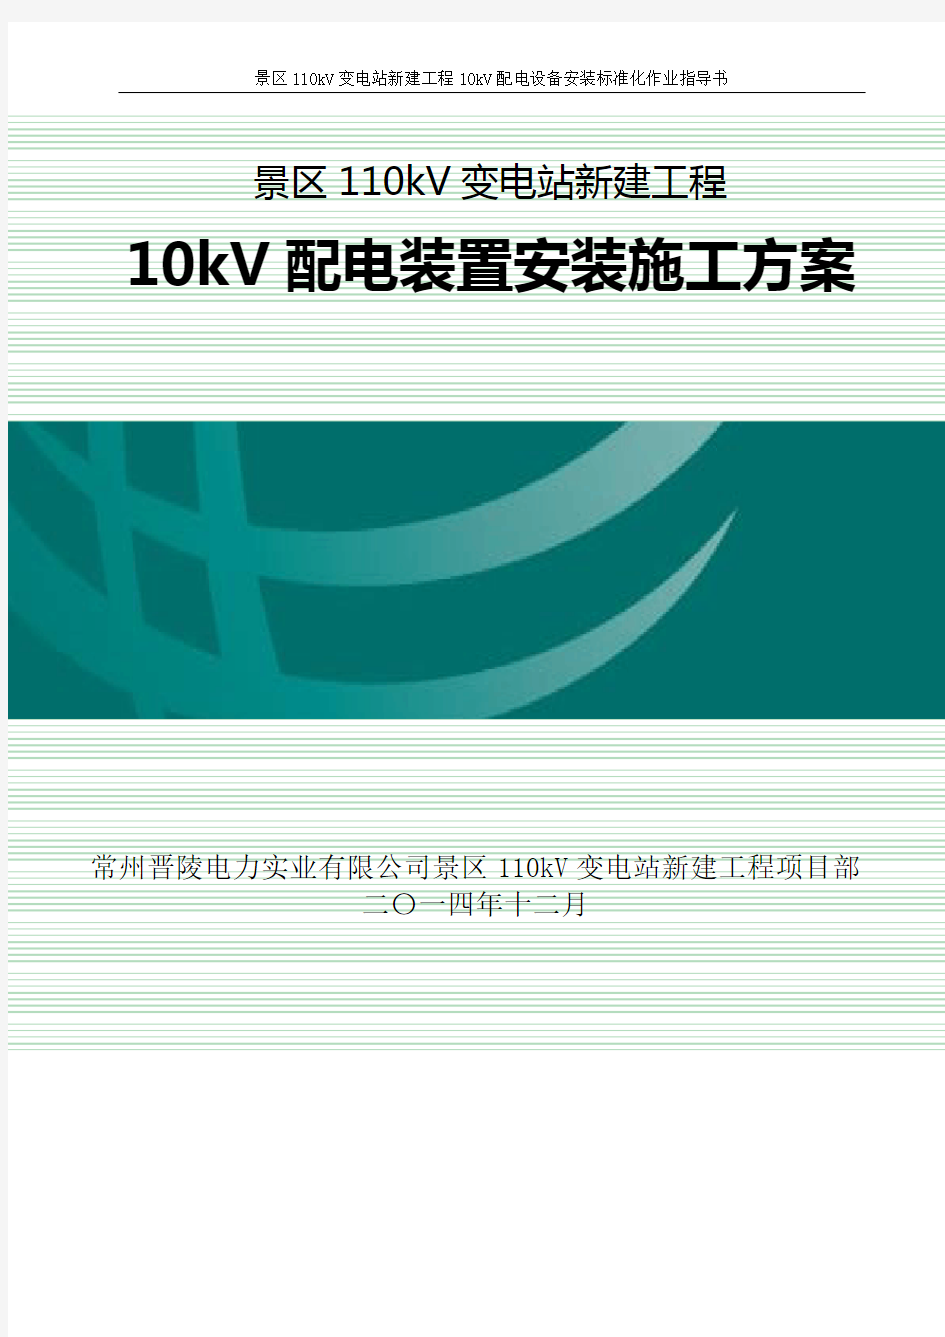 10kV配电装置安装标准化作业指导书